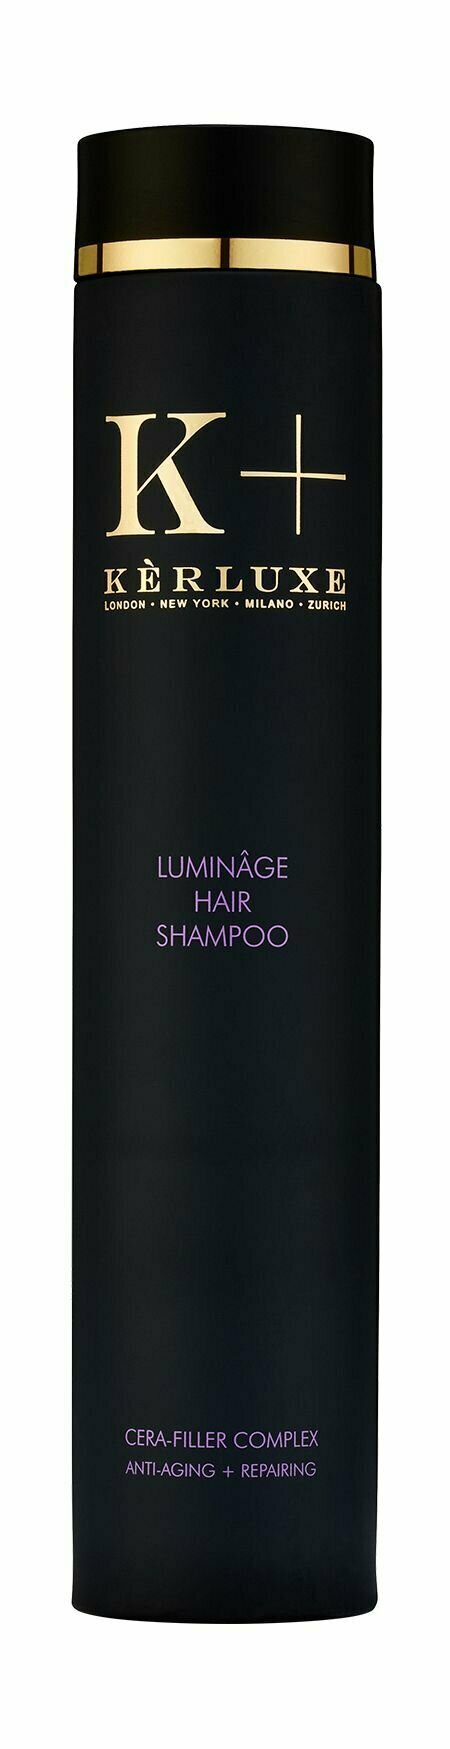 Антивозрастной шампунь для укрепления и защиты волос и кожи головы / Kerluxe Luminage Hair Shampoo